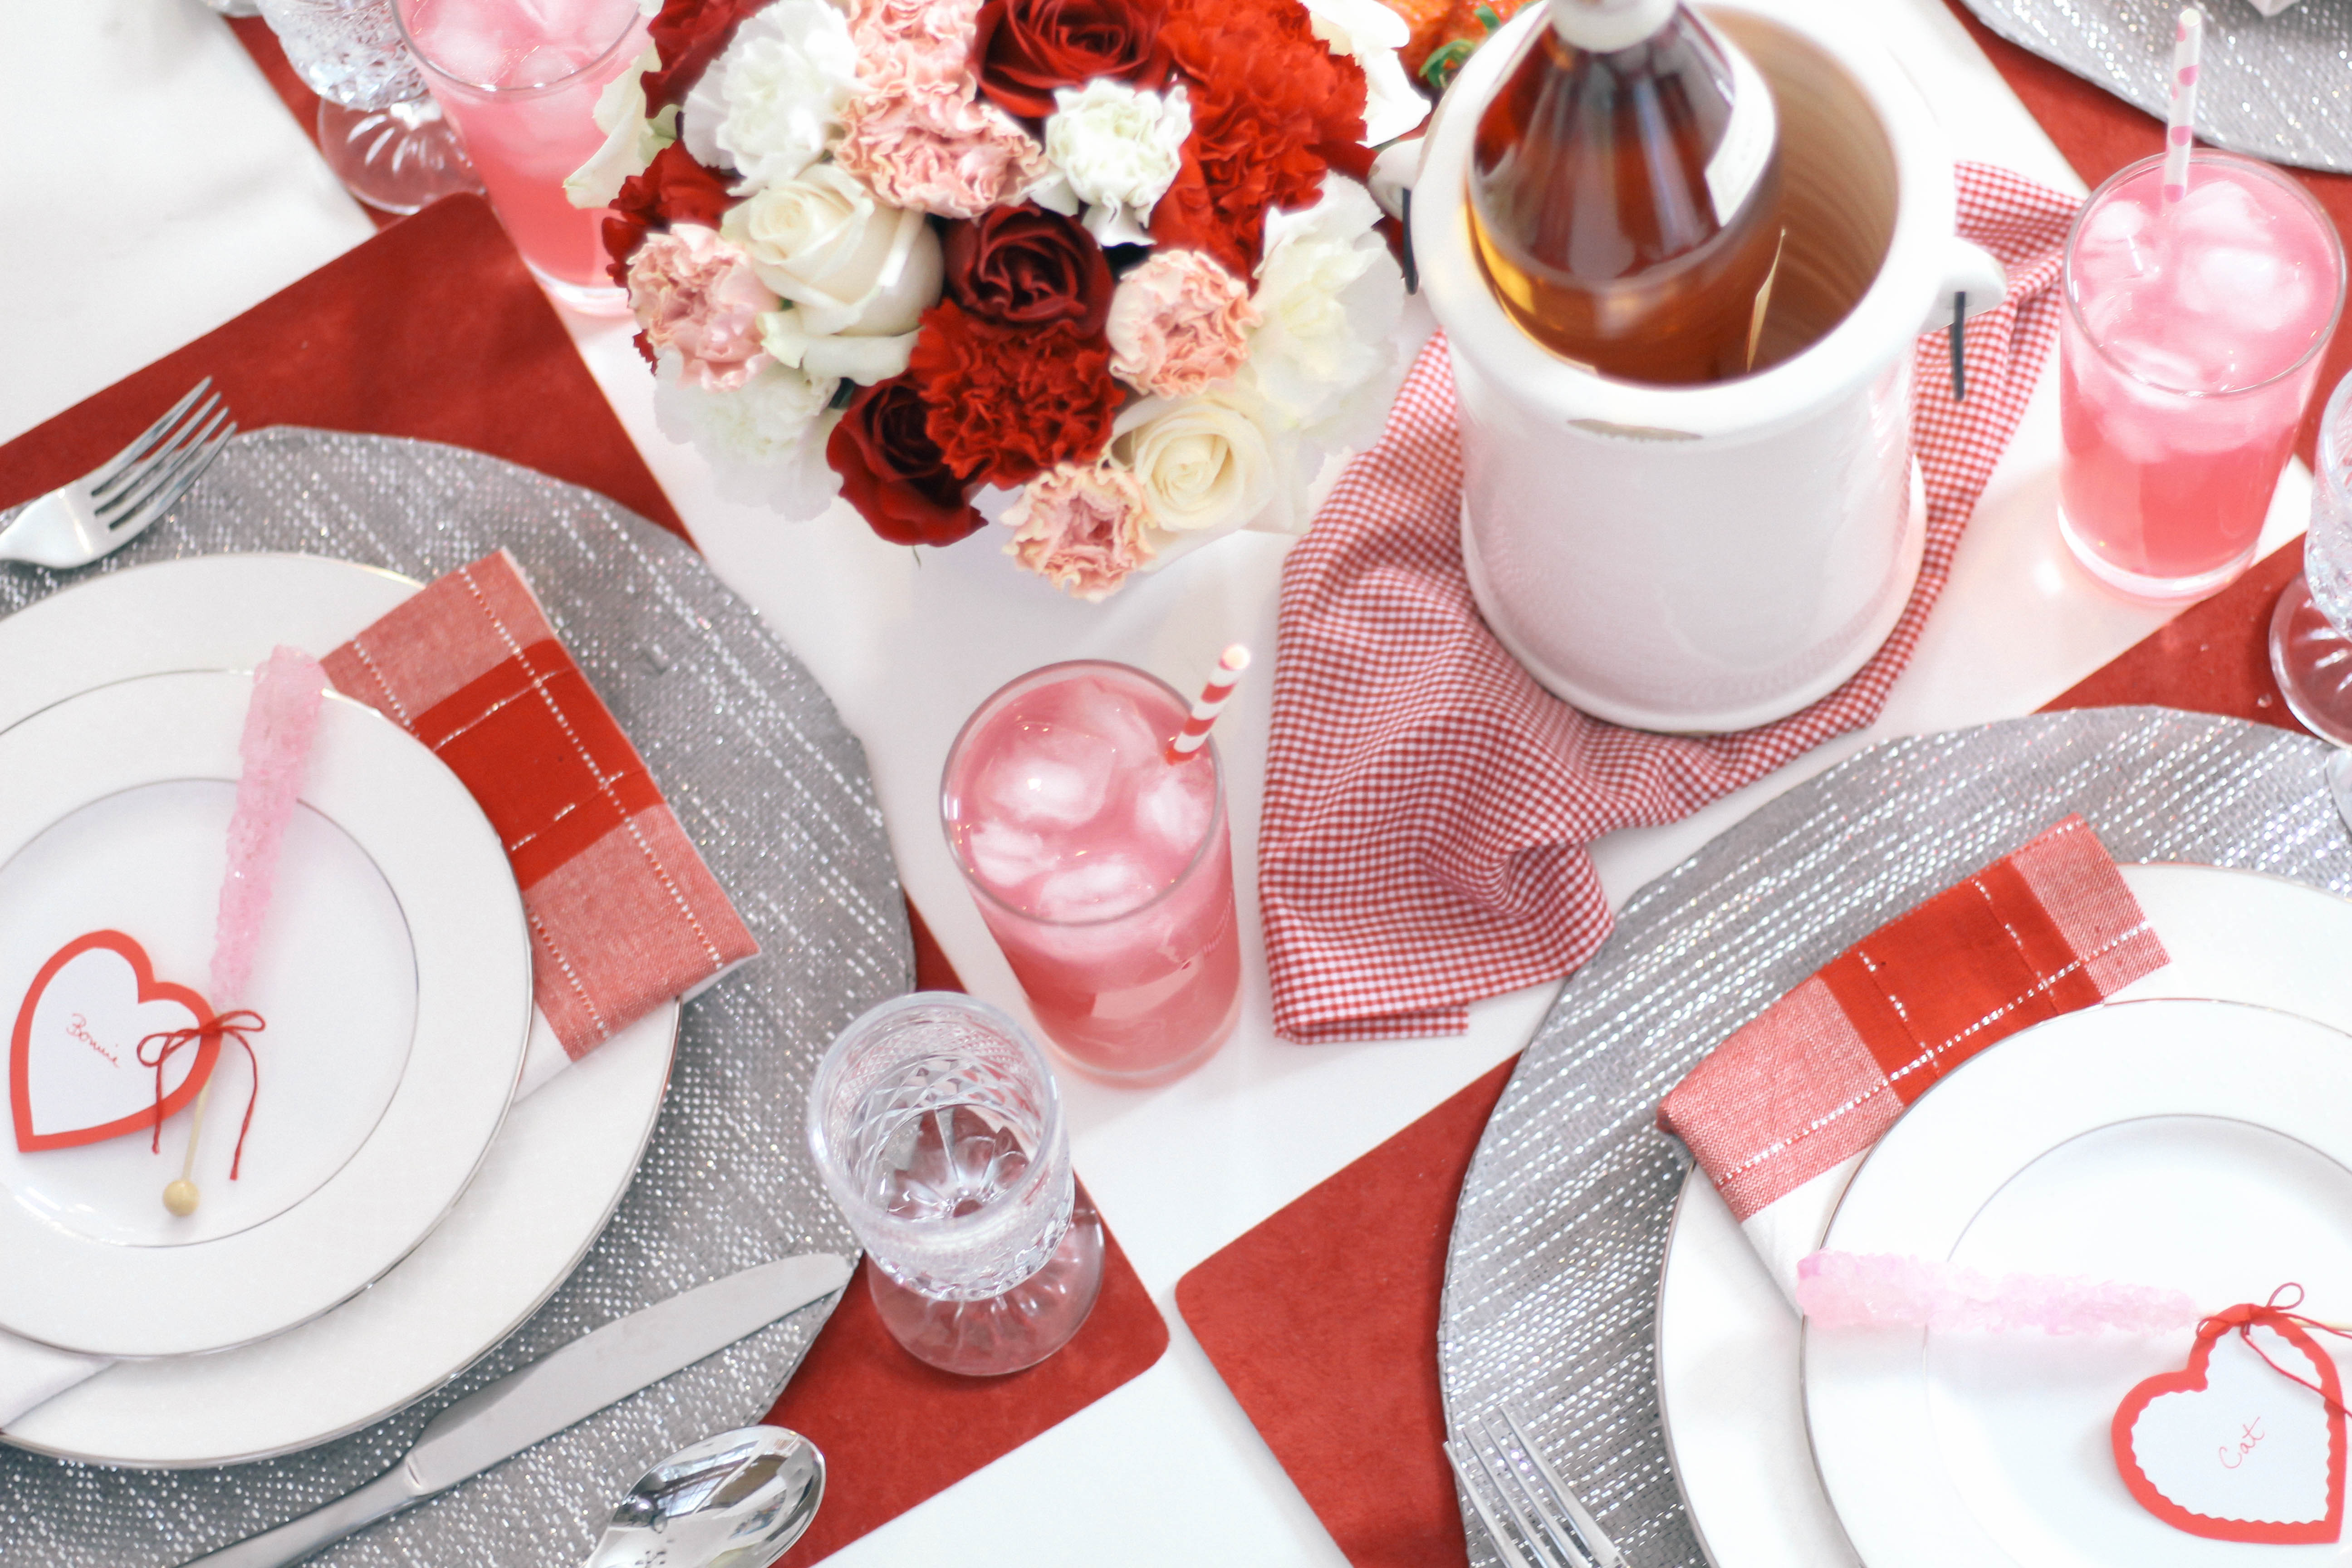 valentine tablescapes, Valentine Tablescape, Table Settings, Pinterest